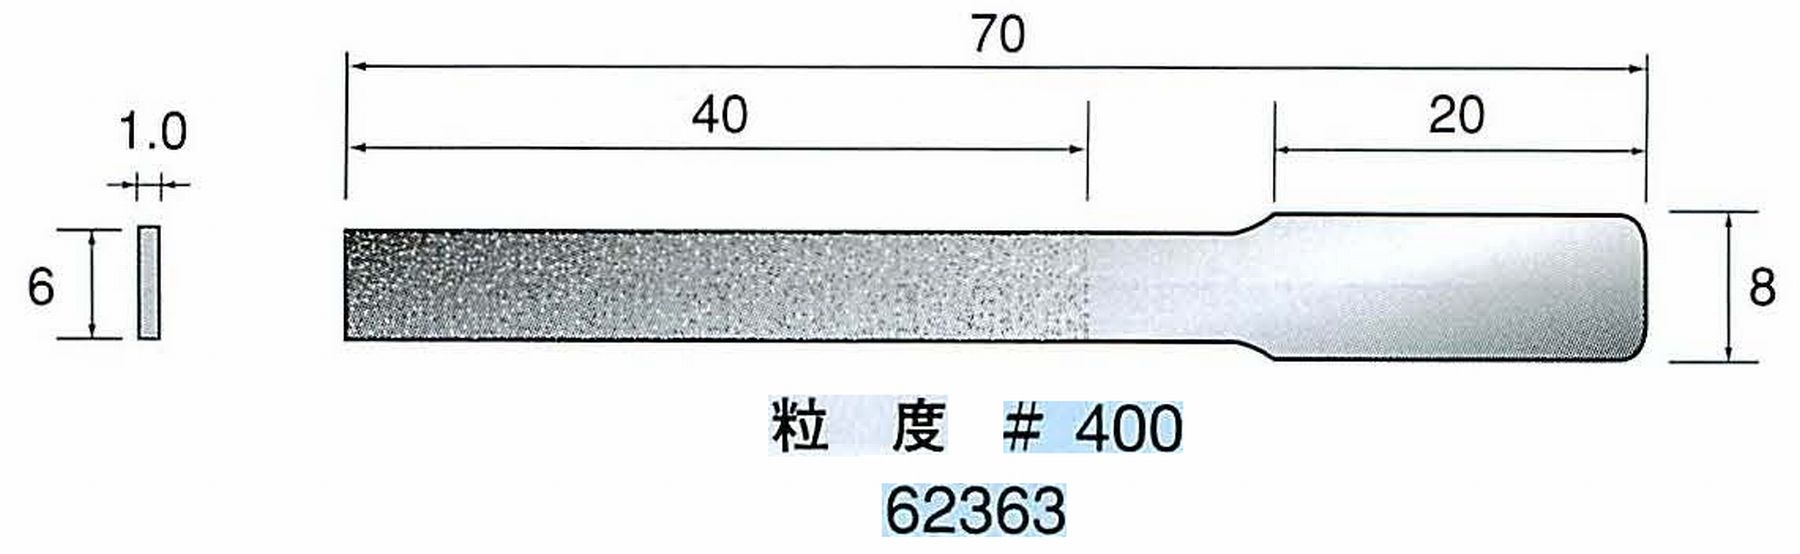 ナカニシ/NAKANISHI ハンディタイプ 電動・エアーヤスリ(往復動) ラスター専用工具 ダイヤモンドヤスリフラットタイプ 62363